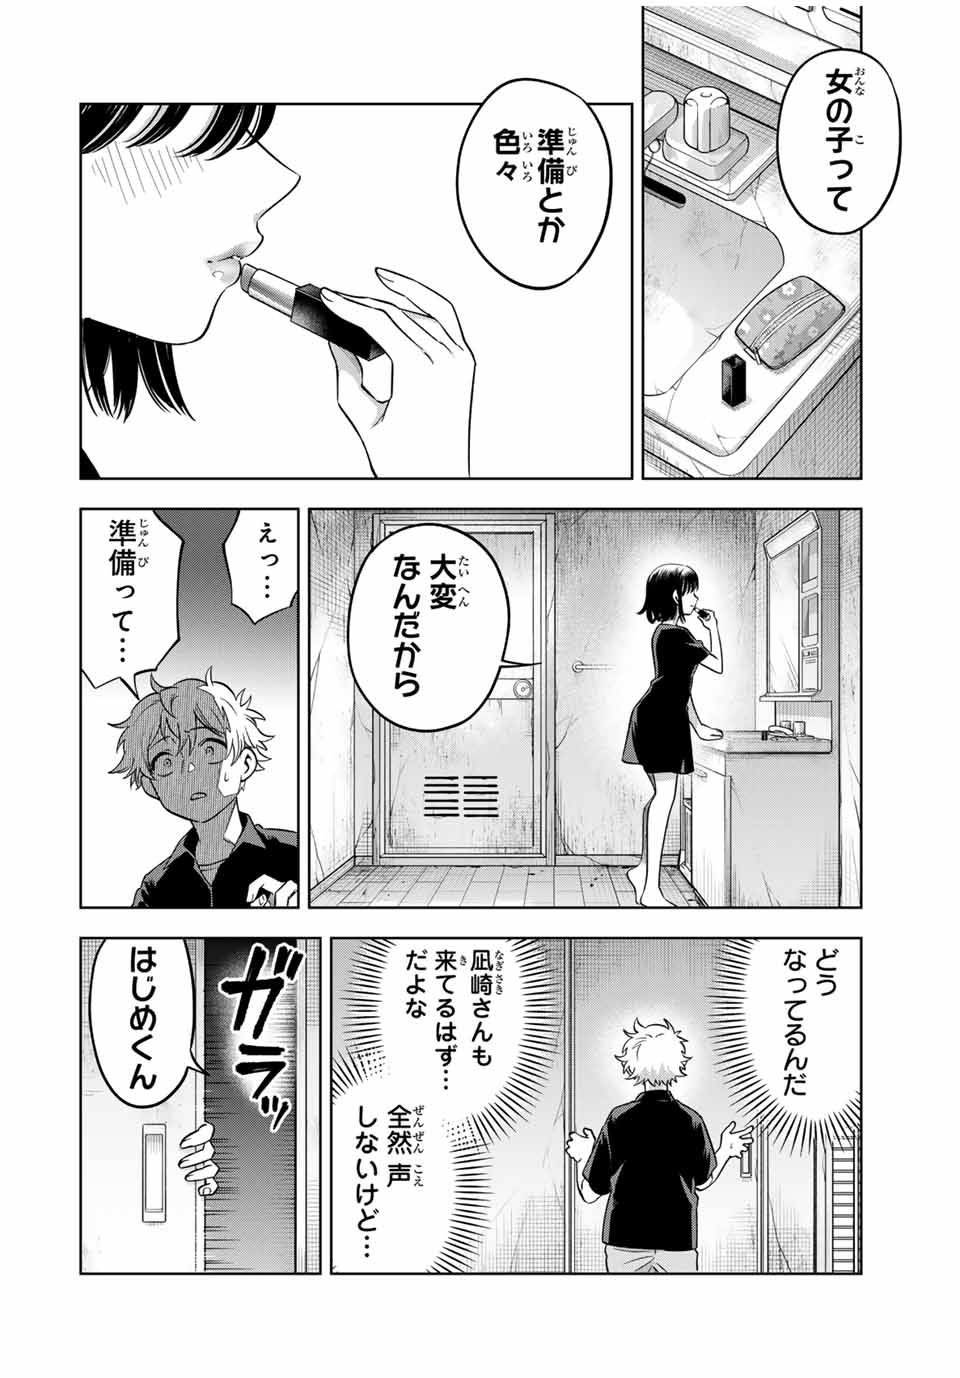 Natsukashiku Omou Kimi Wa Dare - Chapter 20 - Page 6